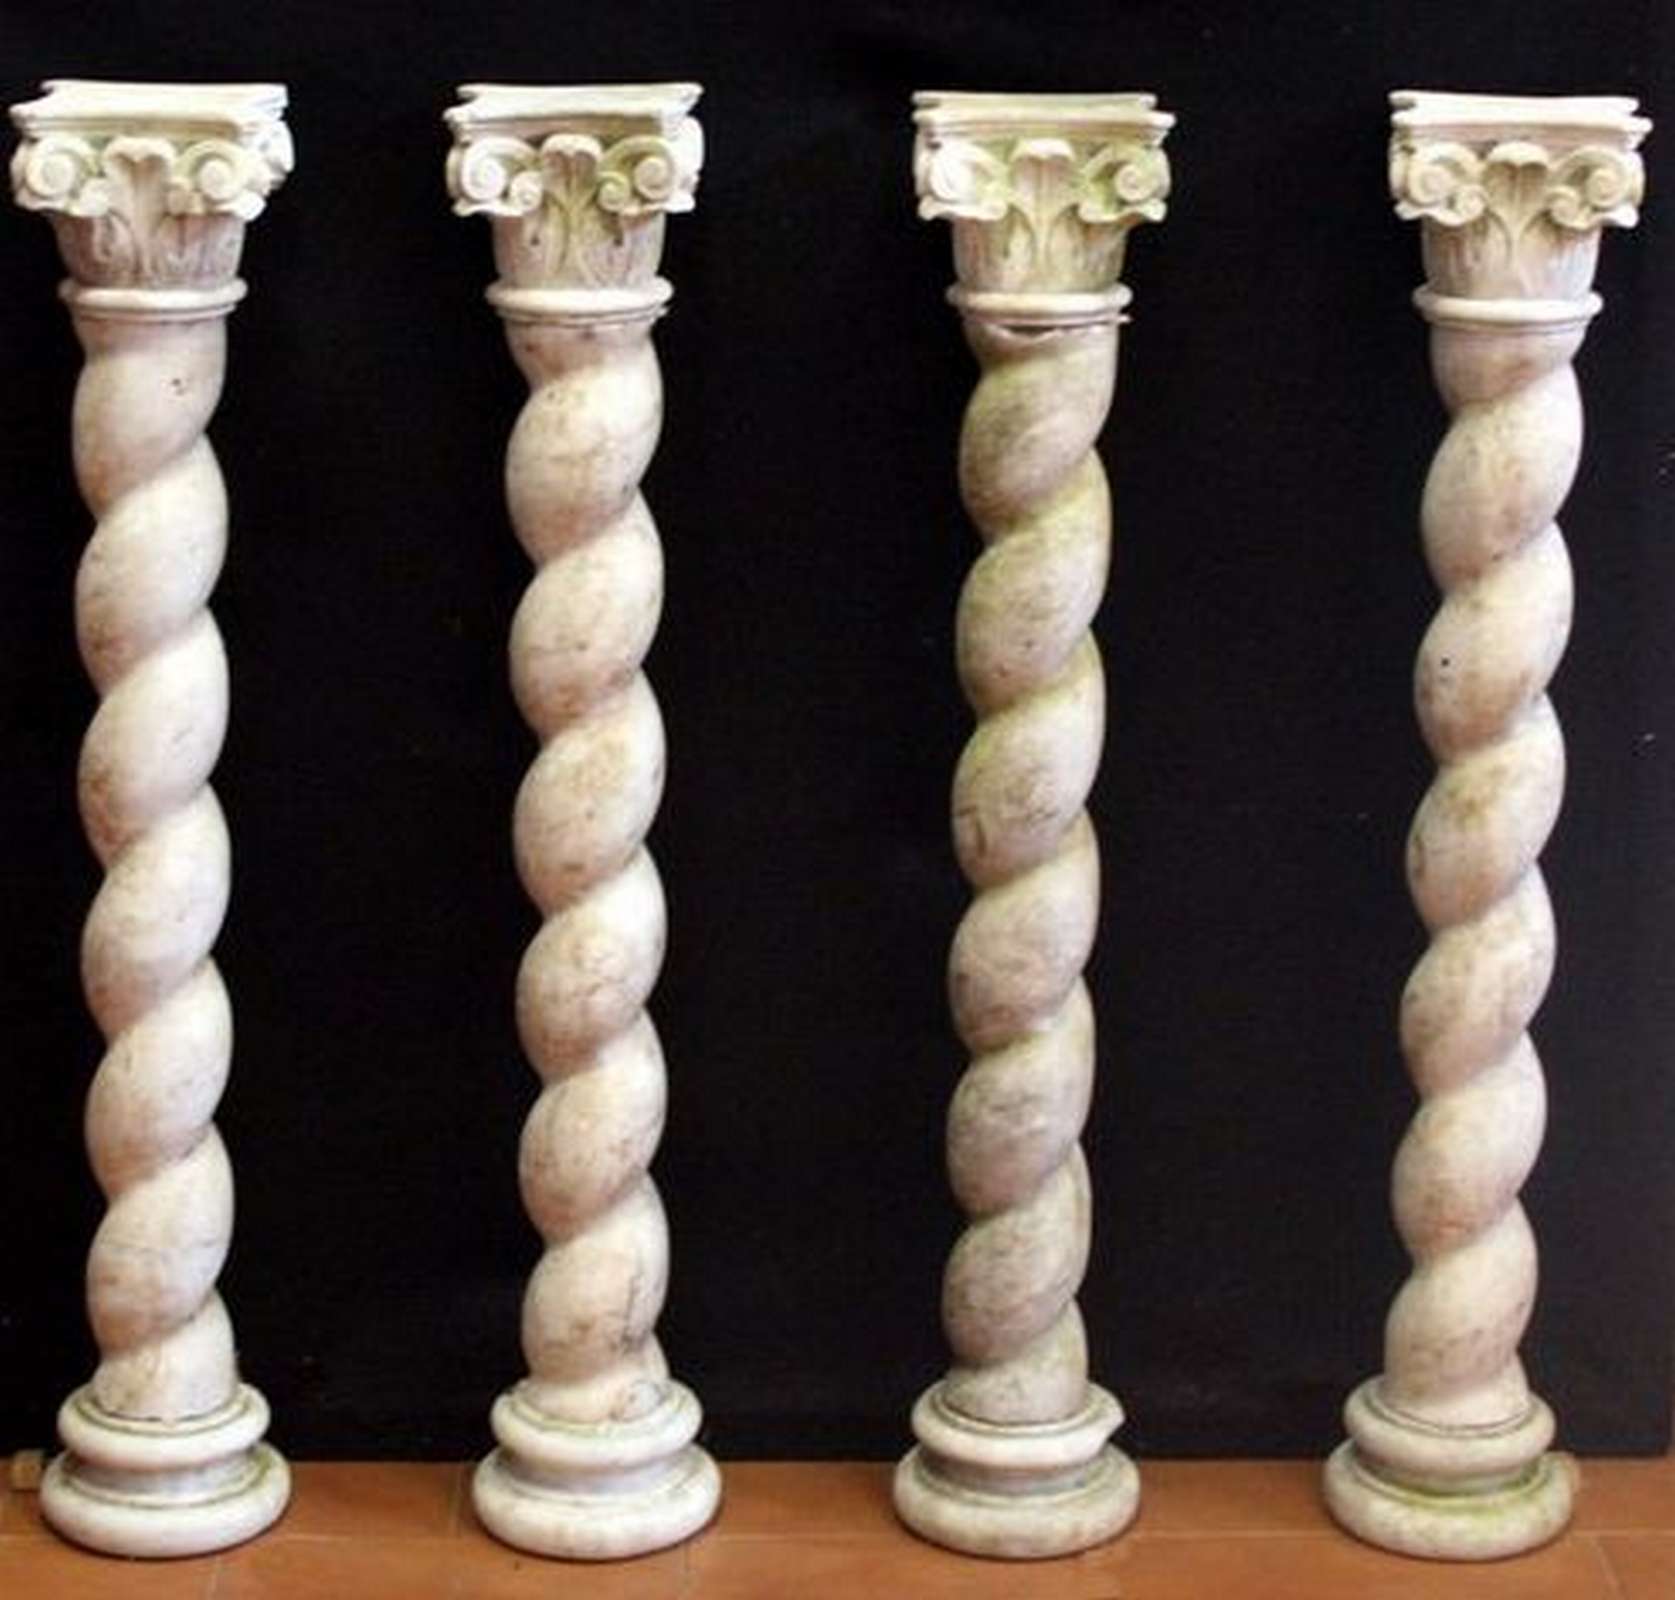 Quattro antiche colonnine in marmo. Epoca 1800. - Colonne antiche - Architettura - Prodotti - Antichità Fiorillo